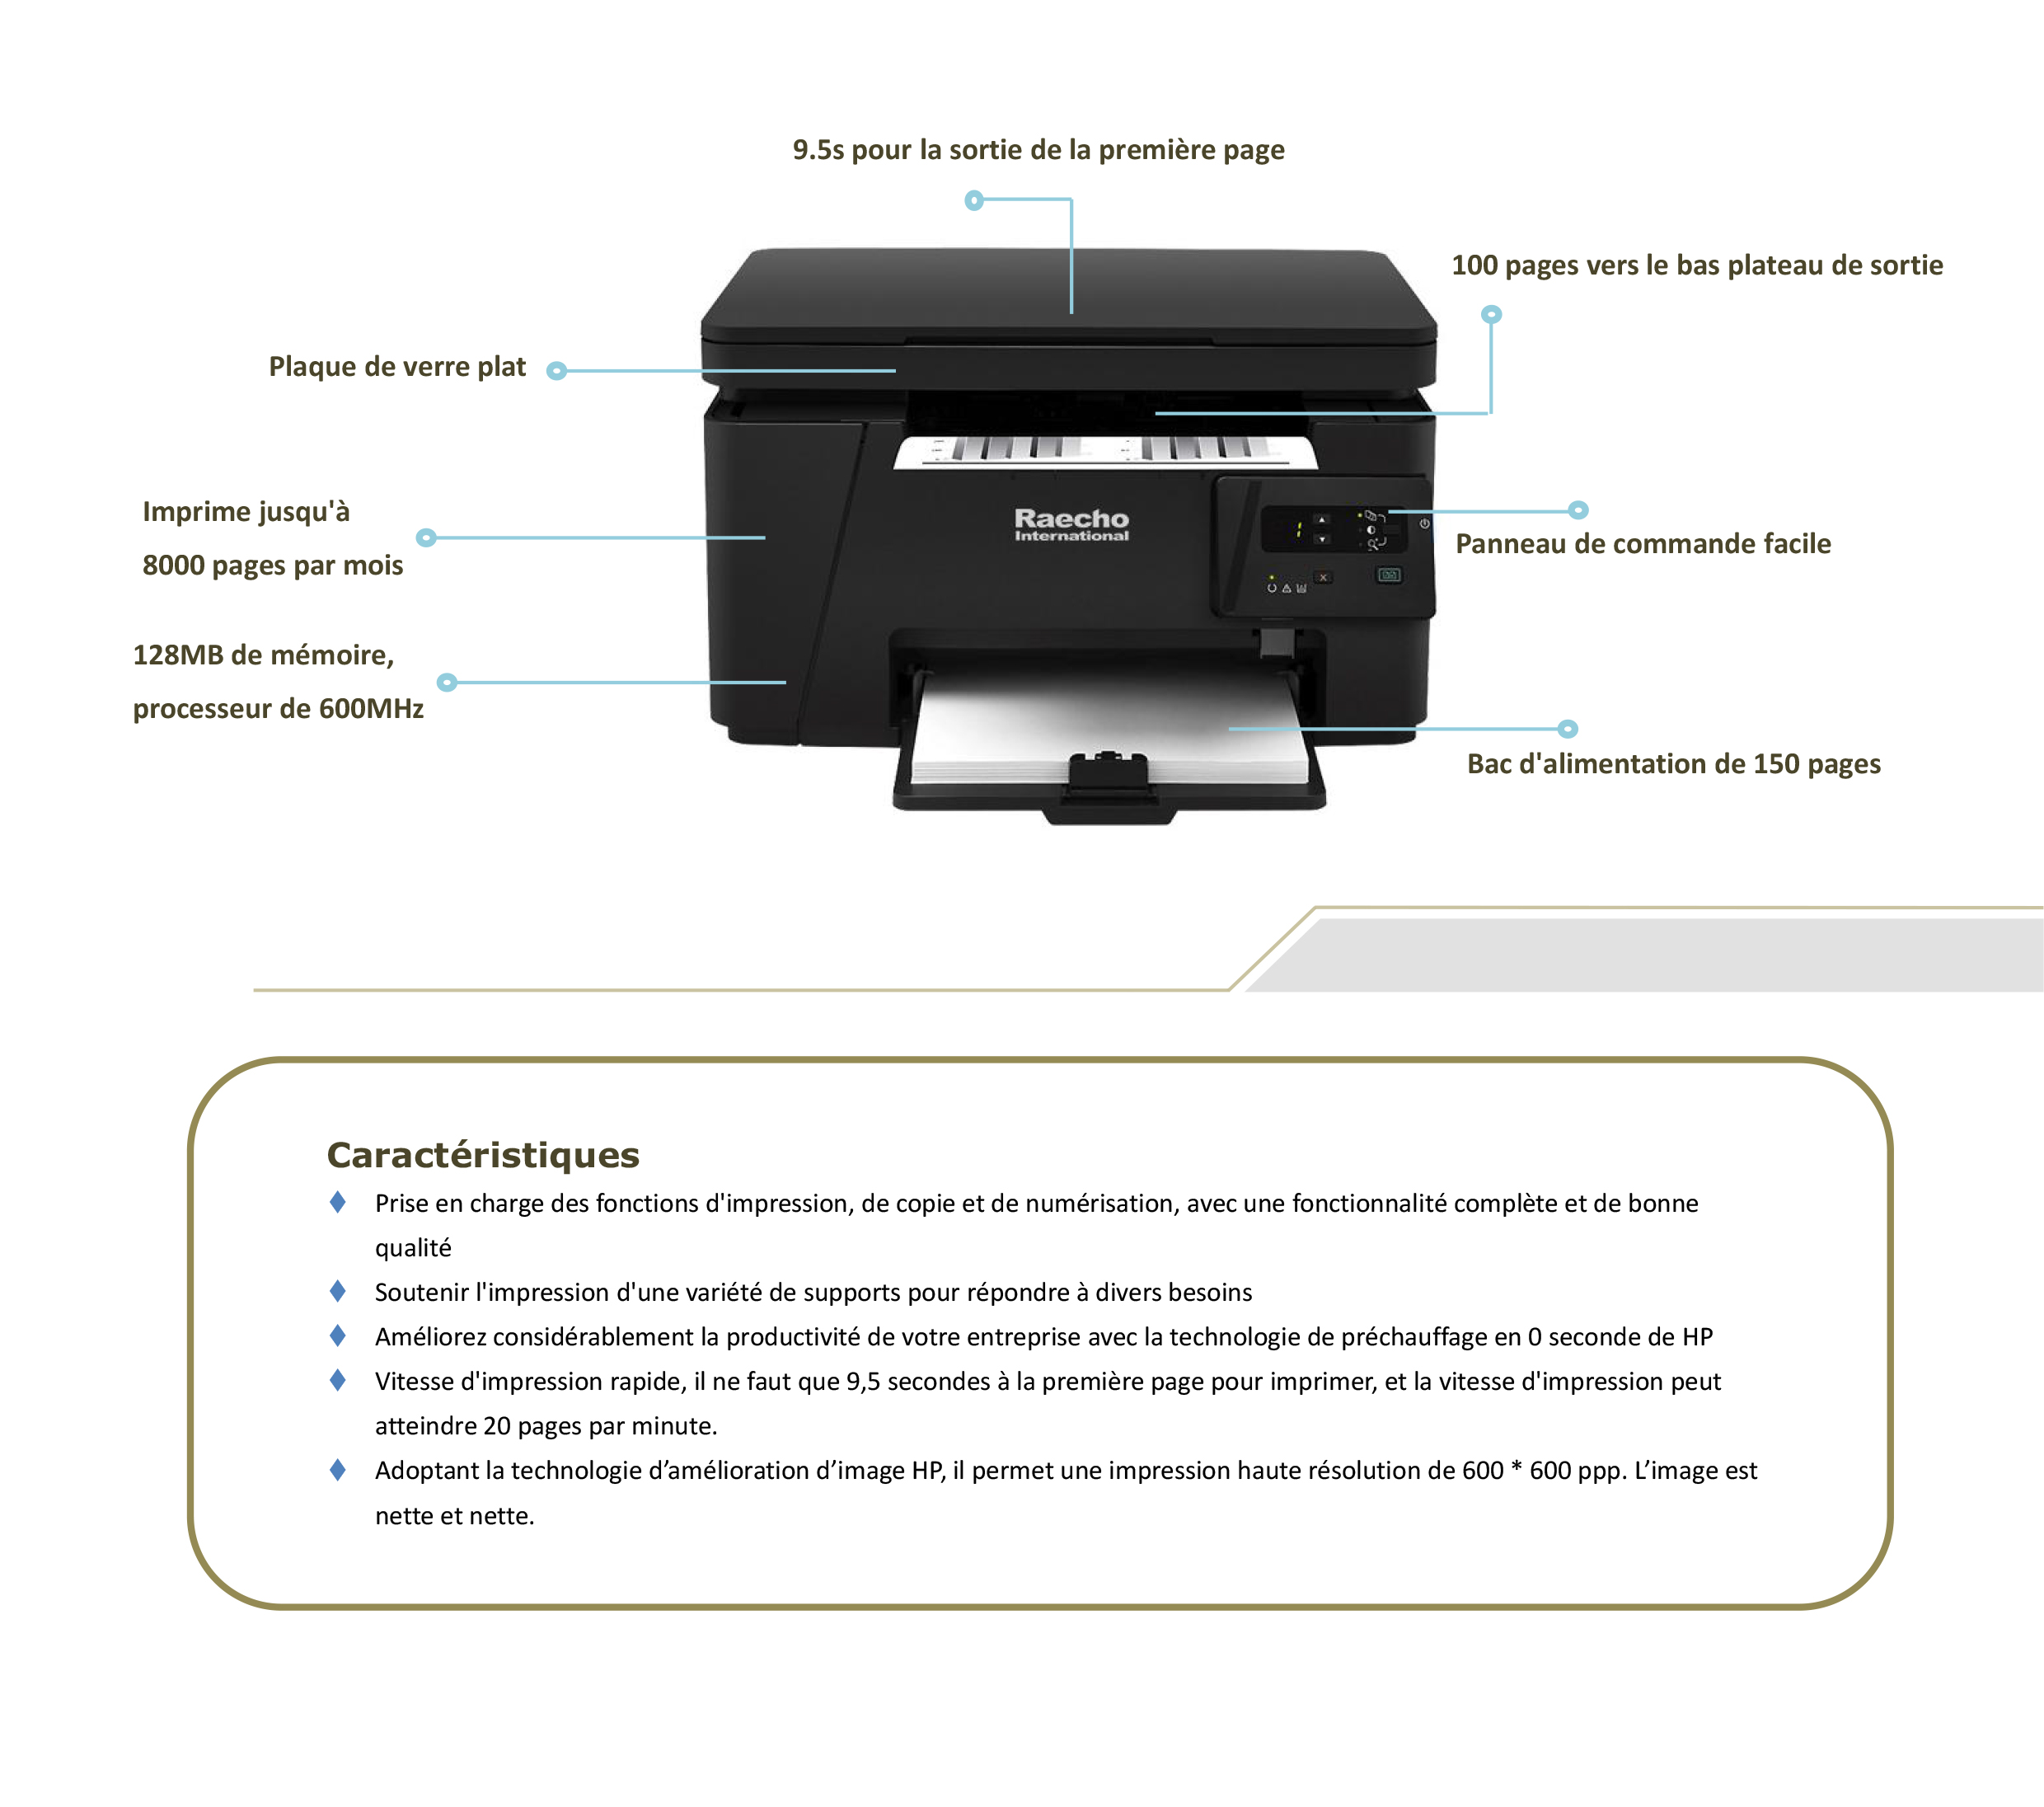 Raecho-Multifunction Printer-1.jpg